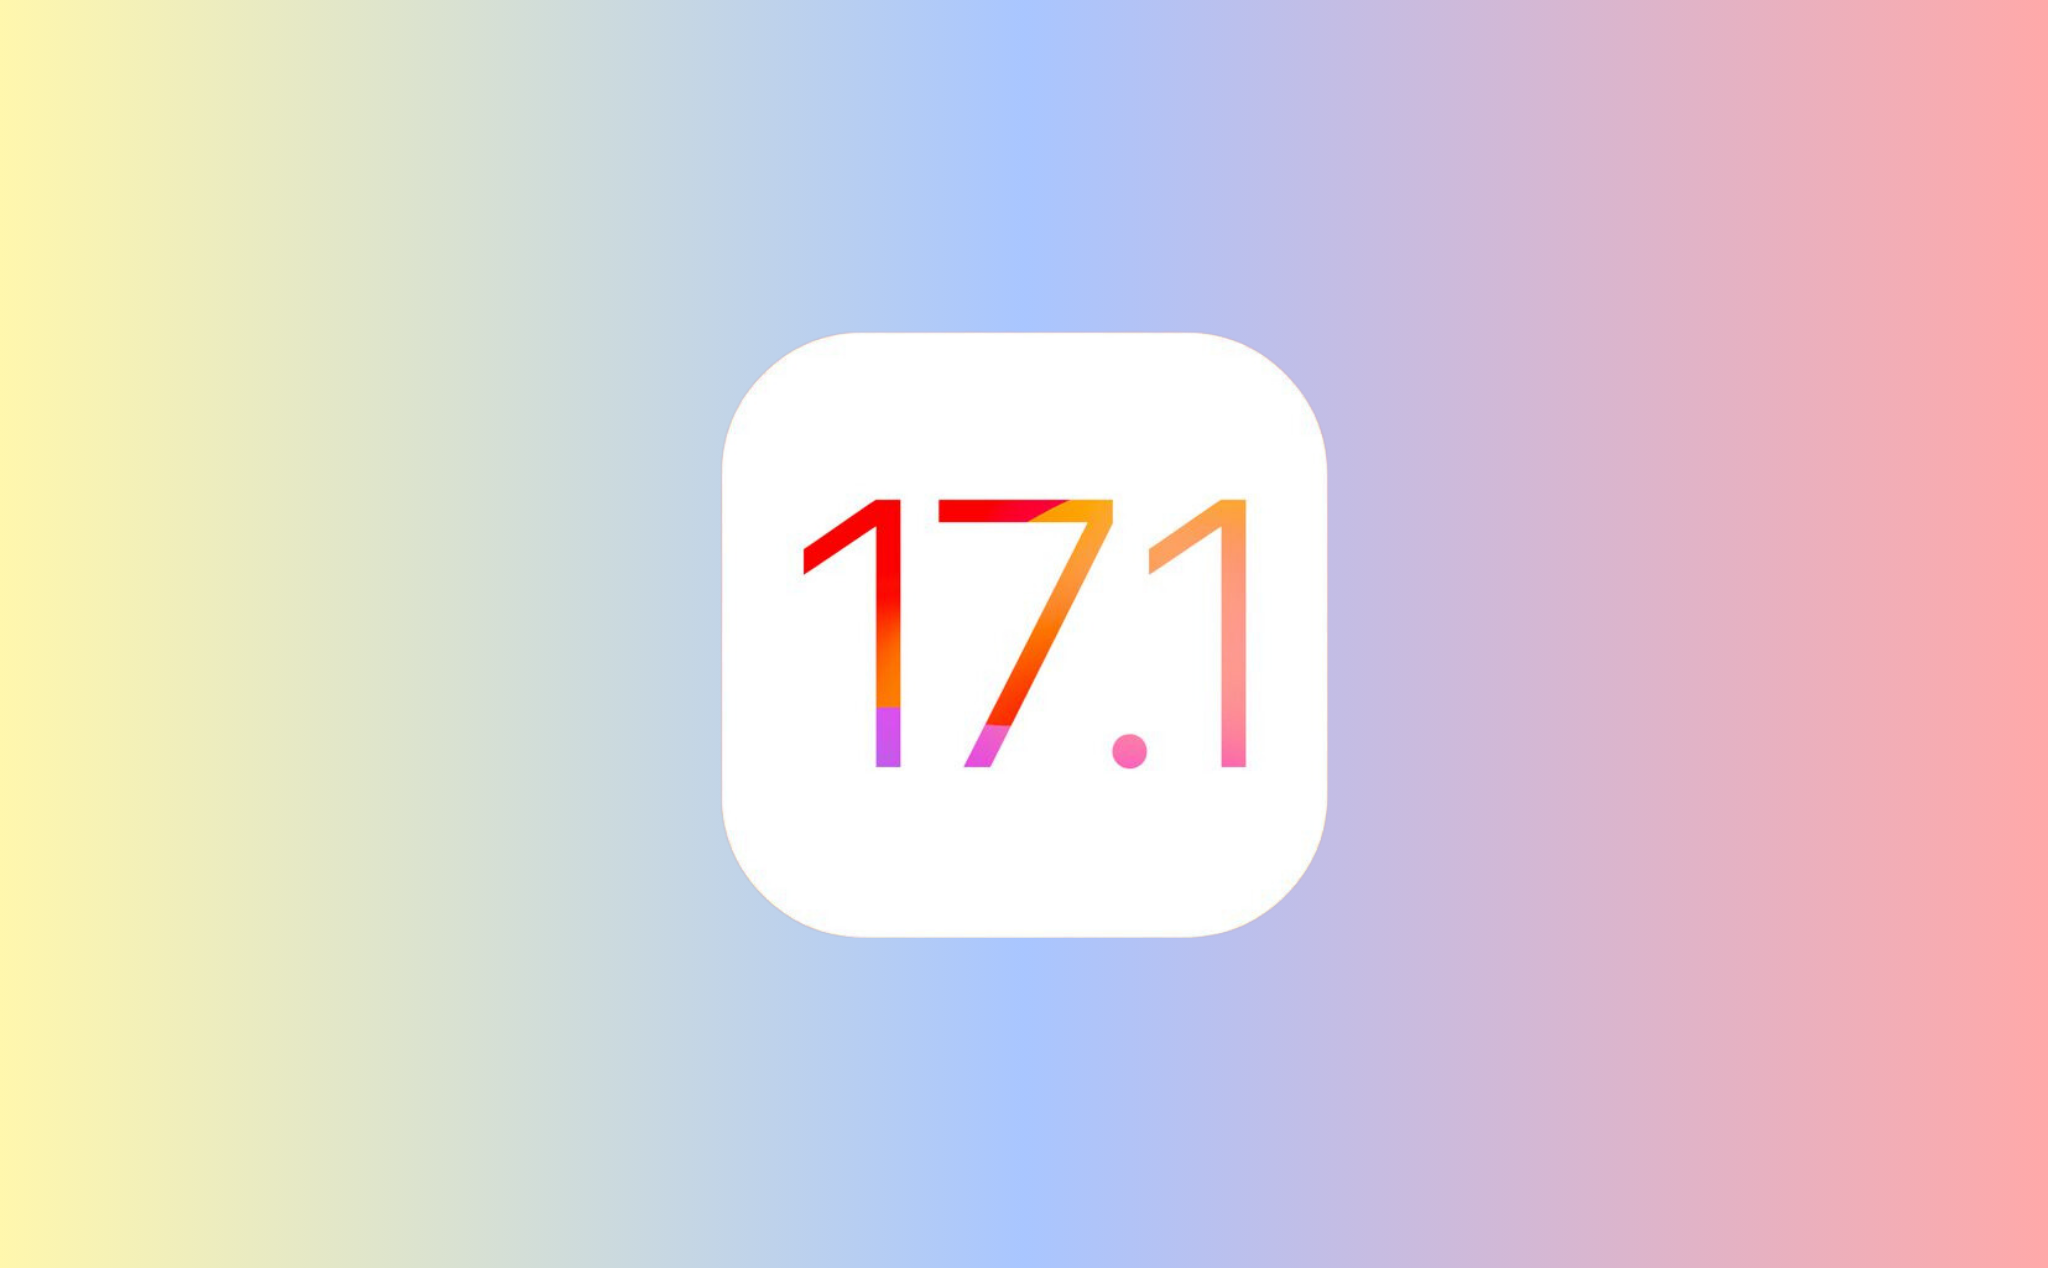 Apple phát hành iOS 17.1 chính thức và một số phần mềm khác